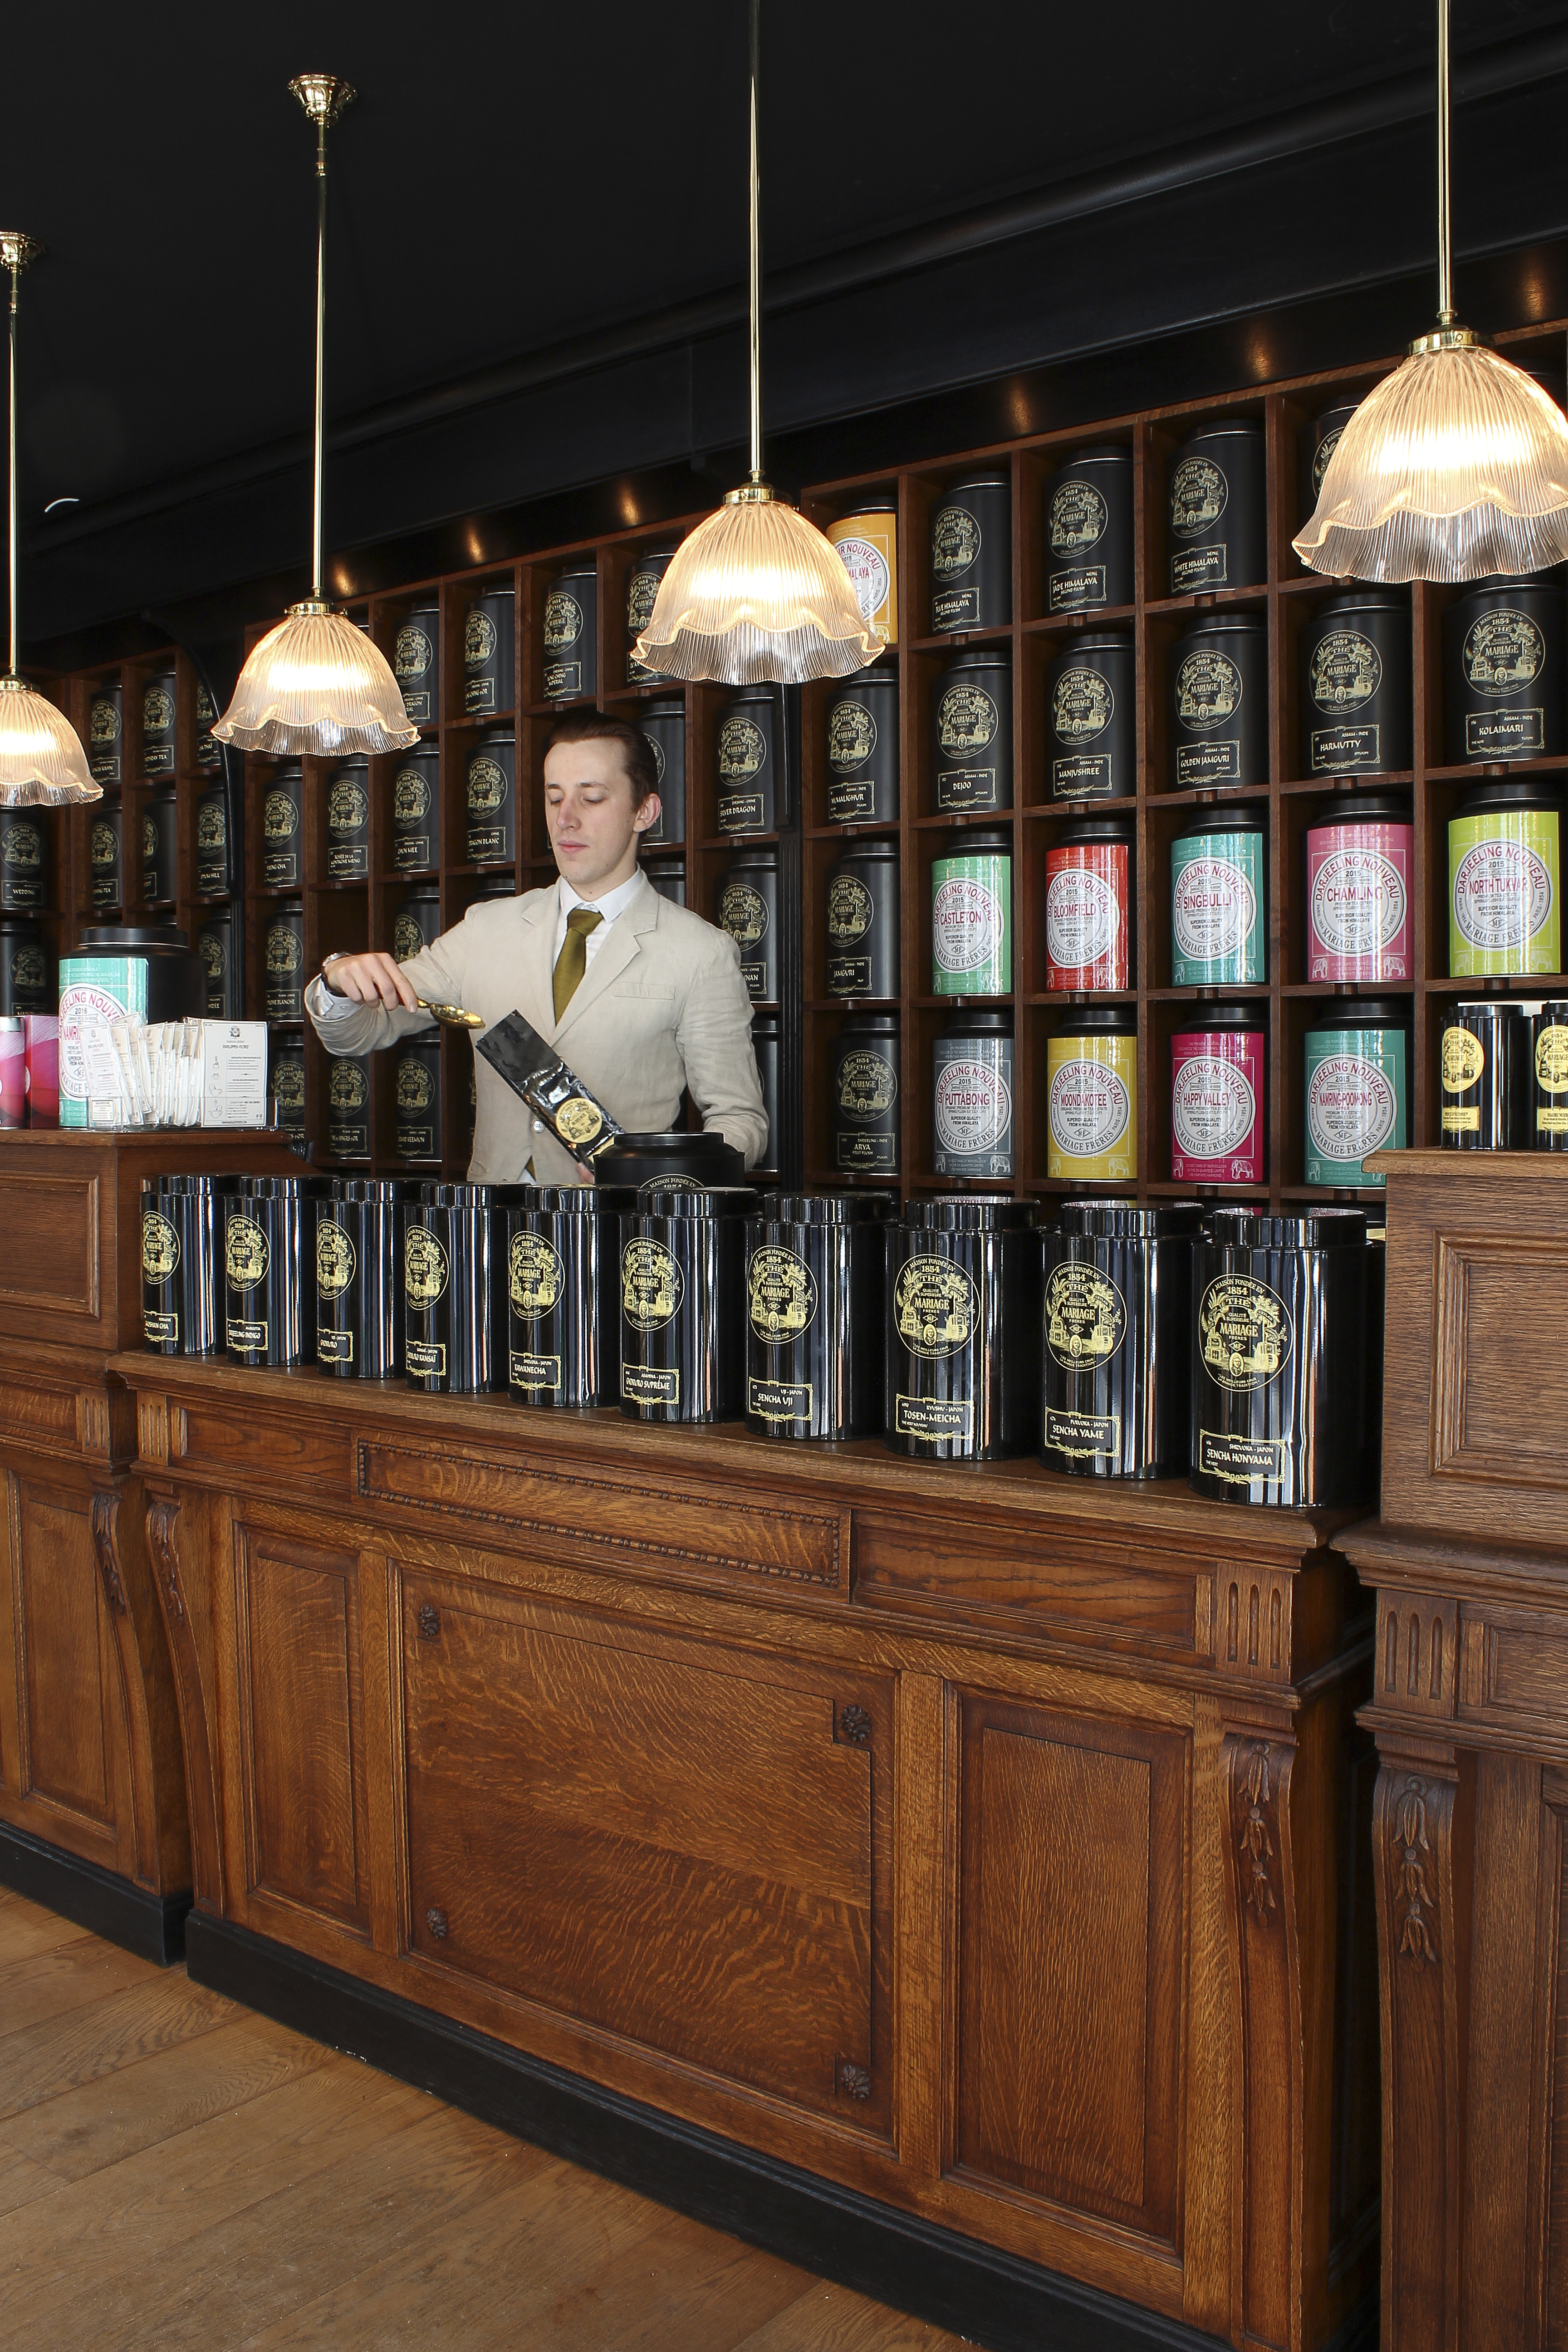 Mariage Frères Brings Paris Tea Emporium to Covent Garden London - Eater  London